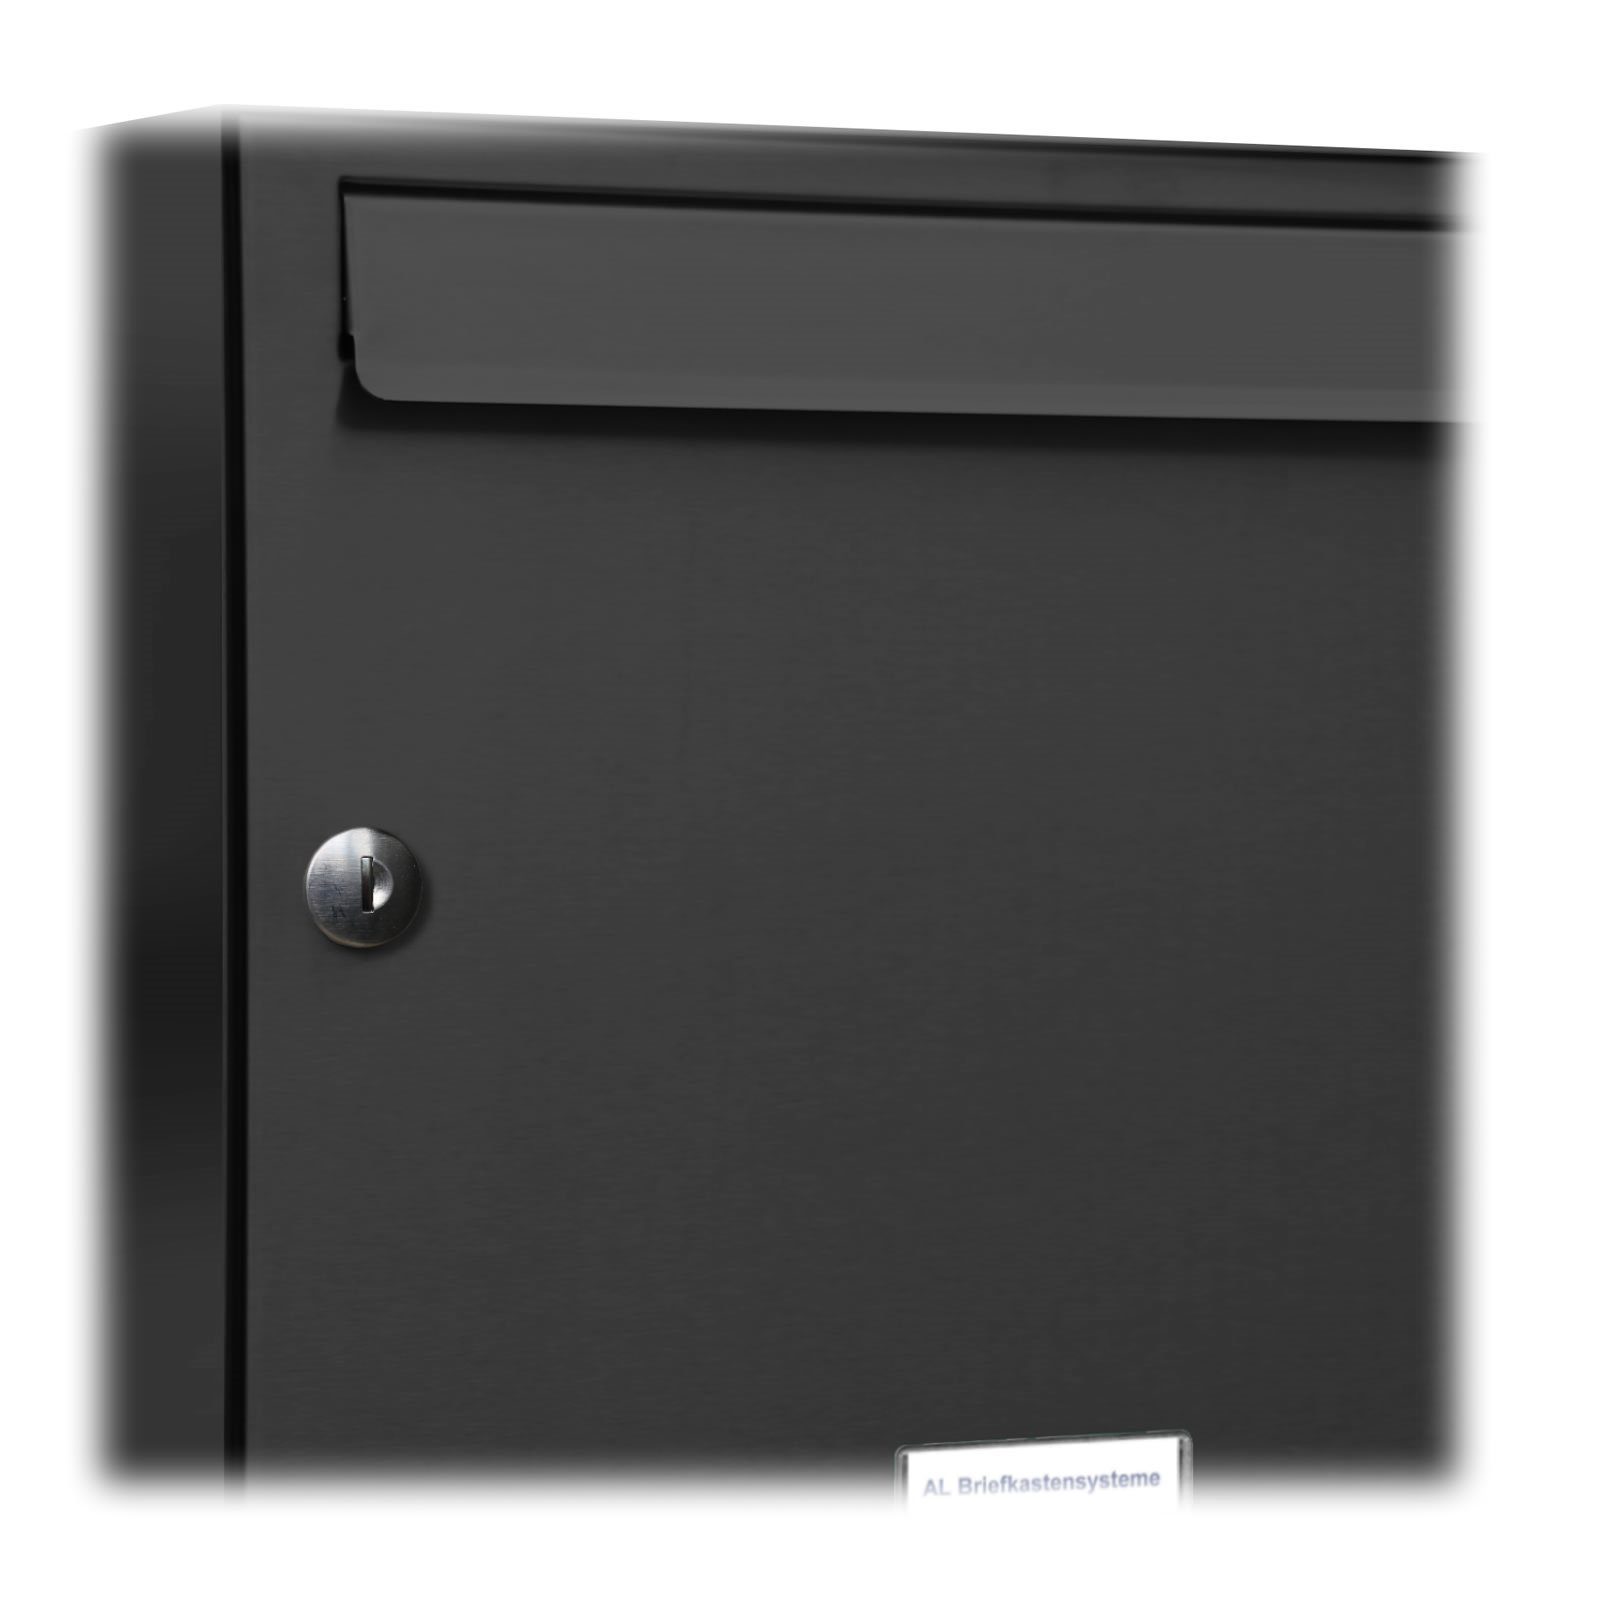 Anthrazit Außen 7016 Briefkastensysteme AL Klingel Farbe Briefkasten 4x2 Wandbriefkasten 7er RAL Premium